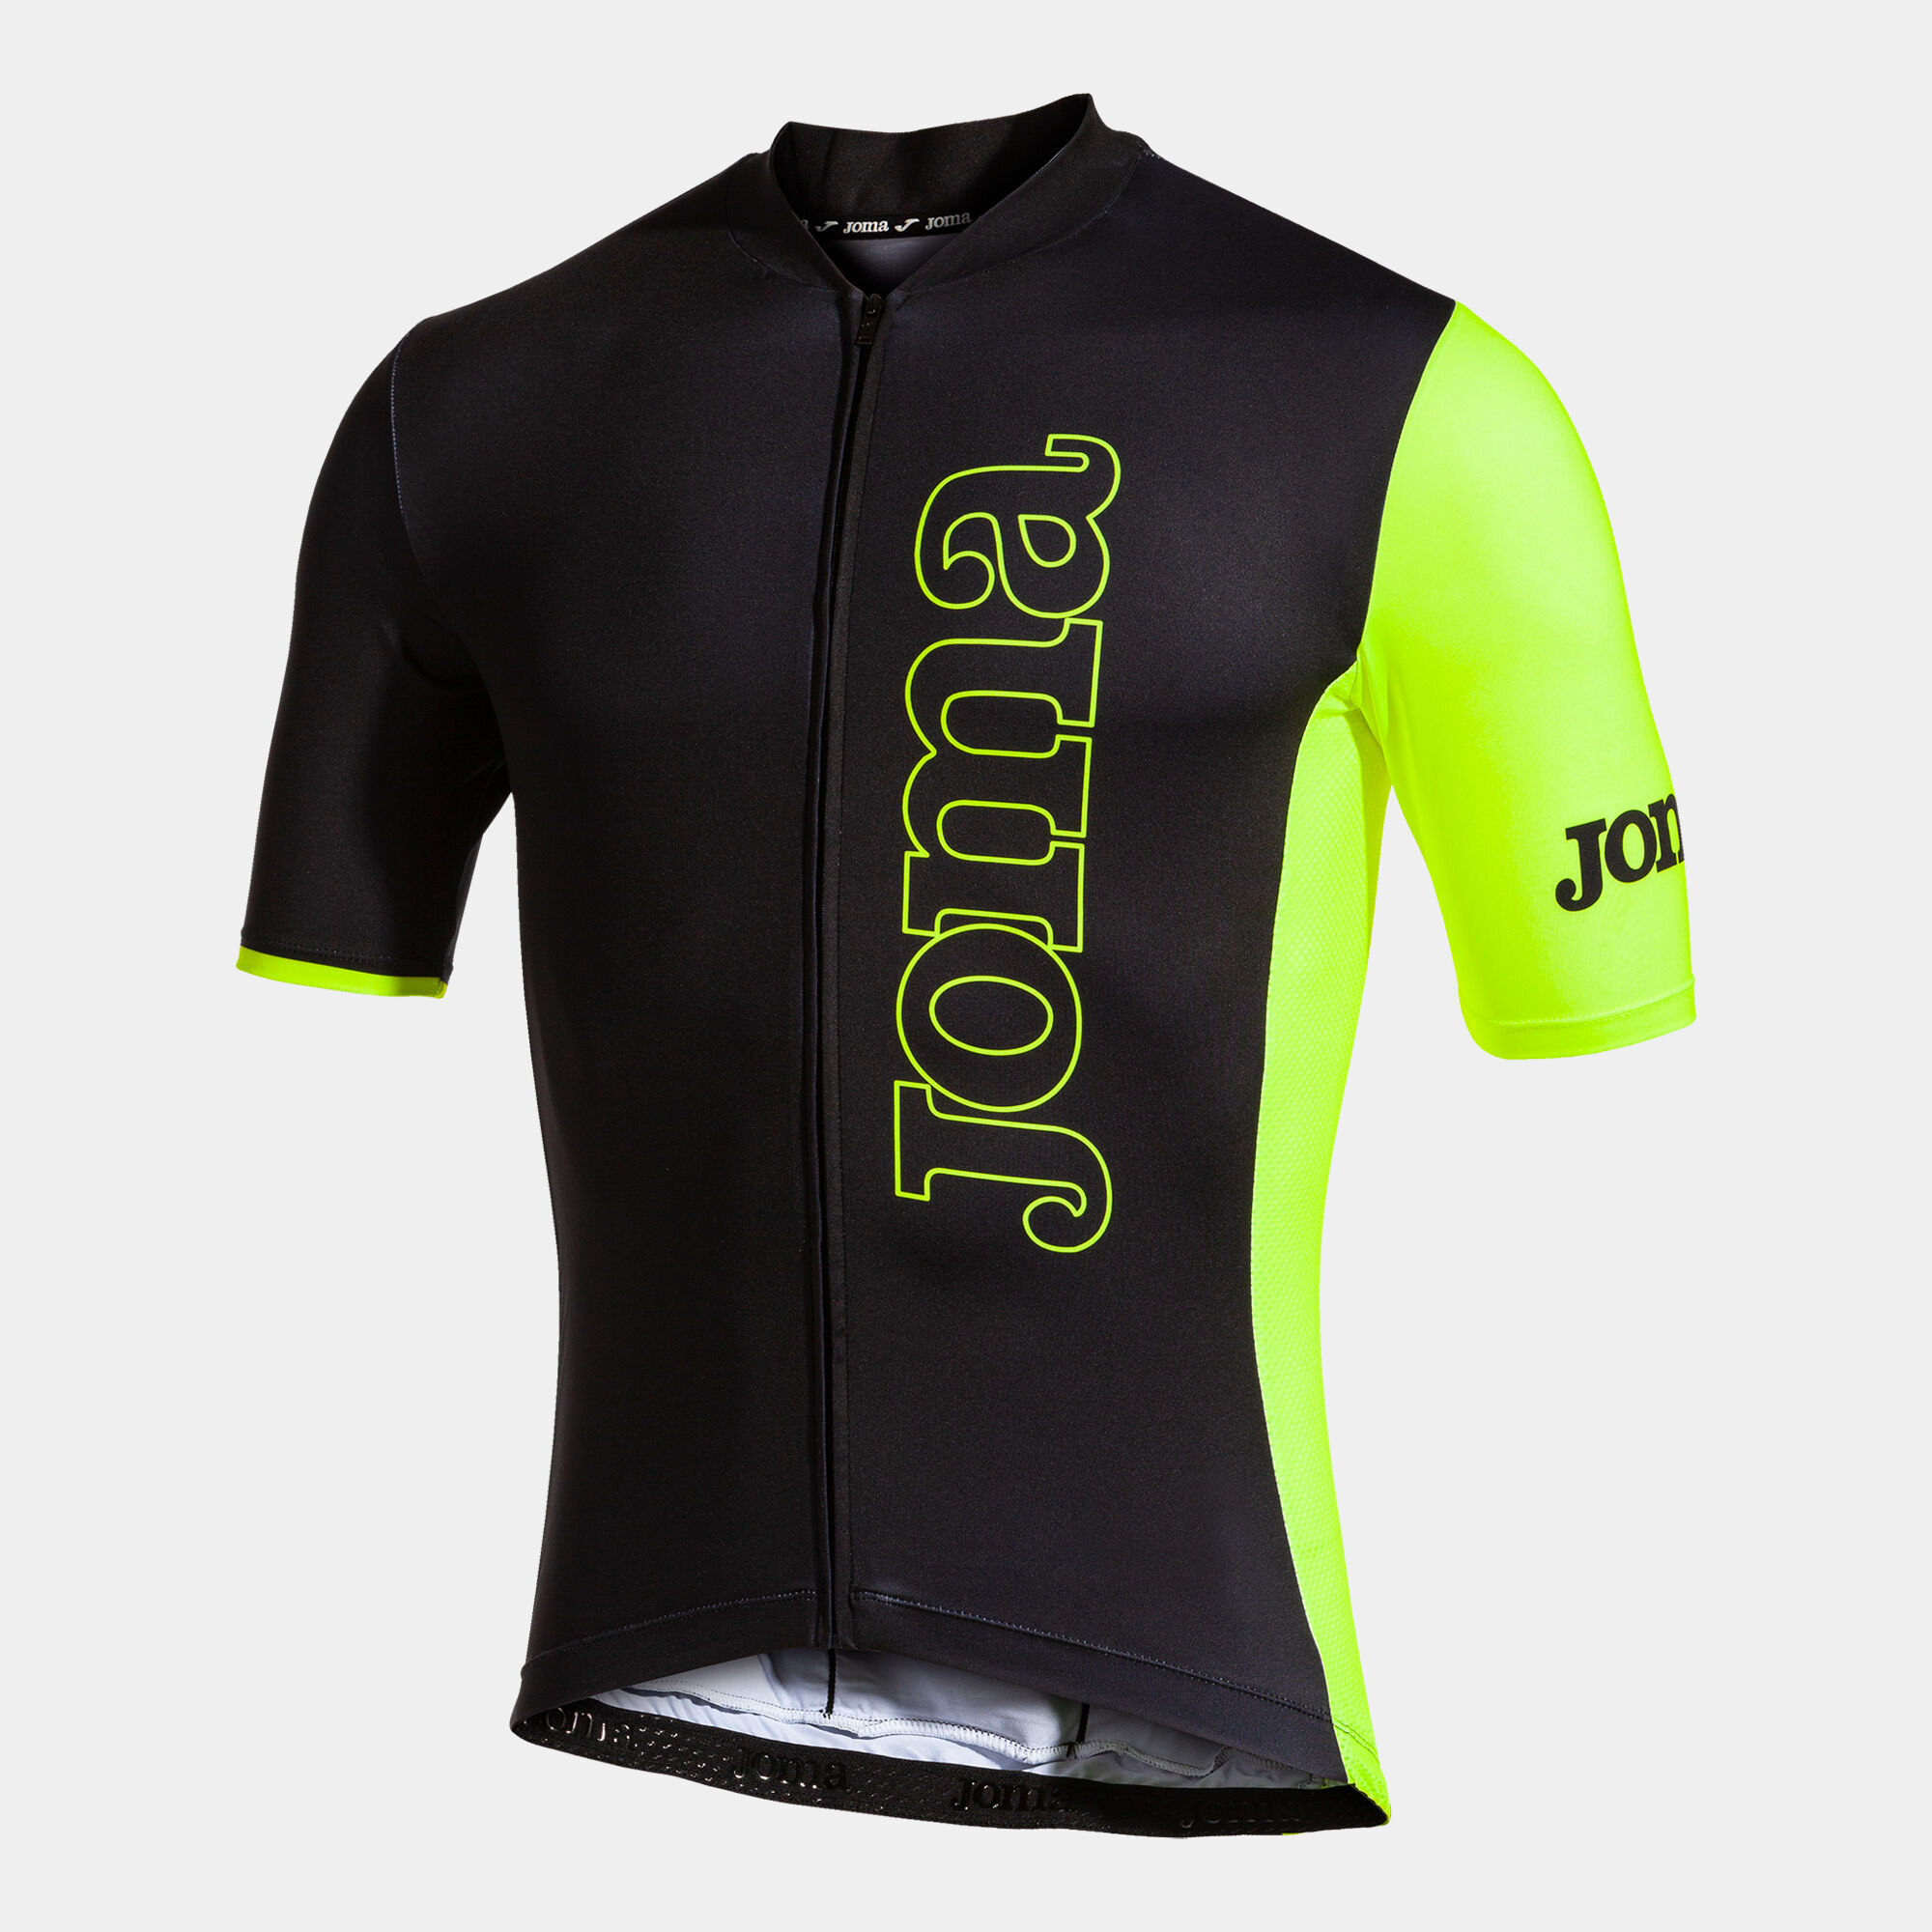 Cycling jersey unisex Crono black fluorescent yellow